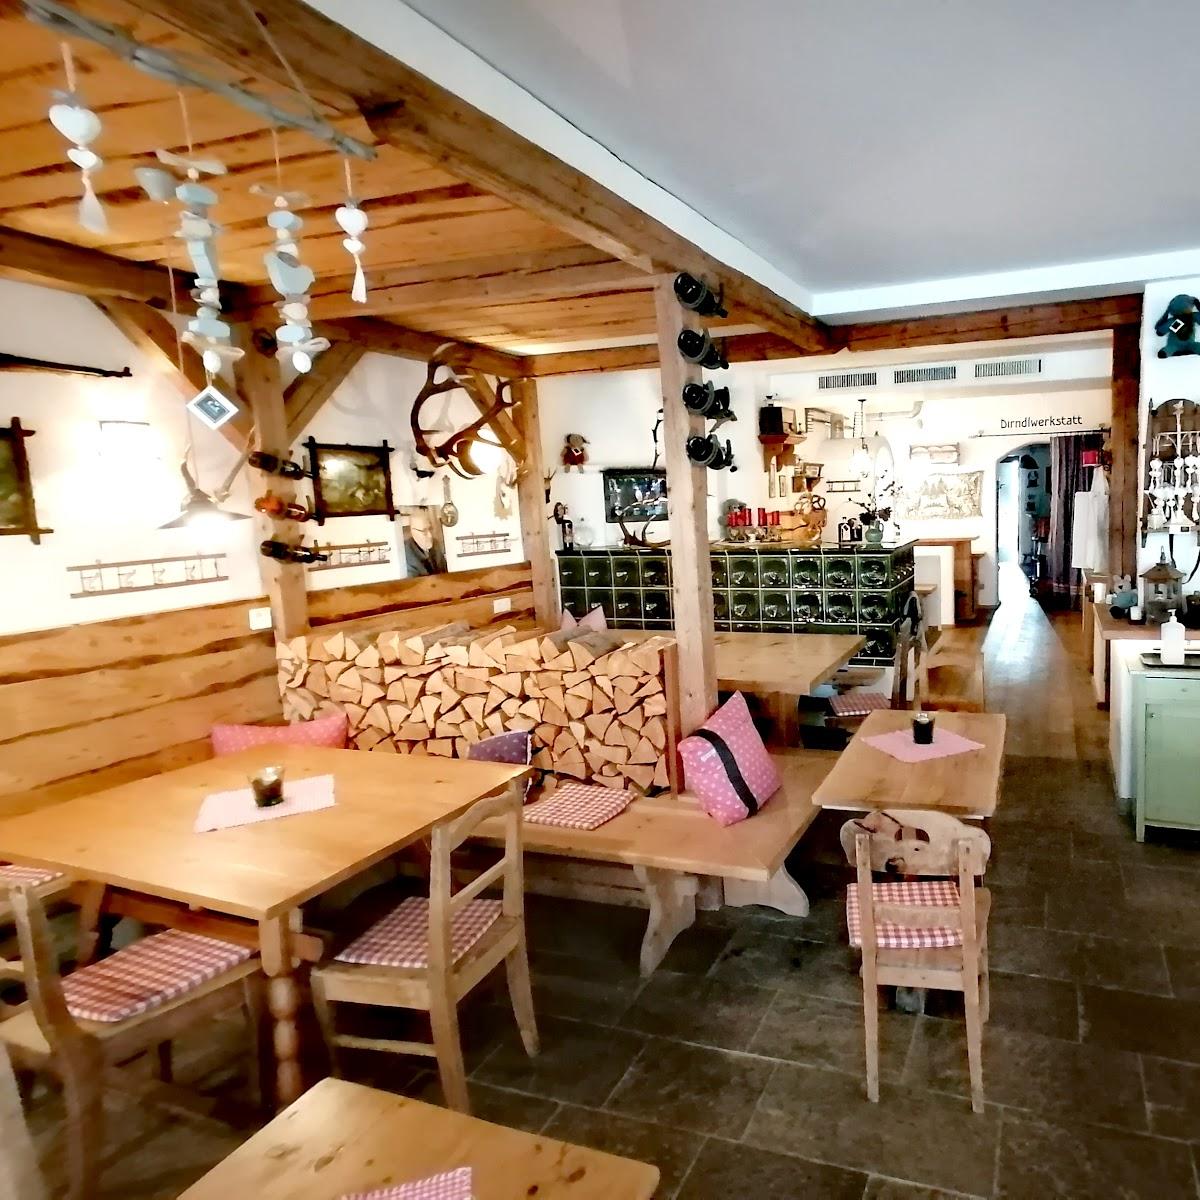 Restaurant "Kuk" in Seefeld in Tirol